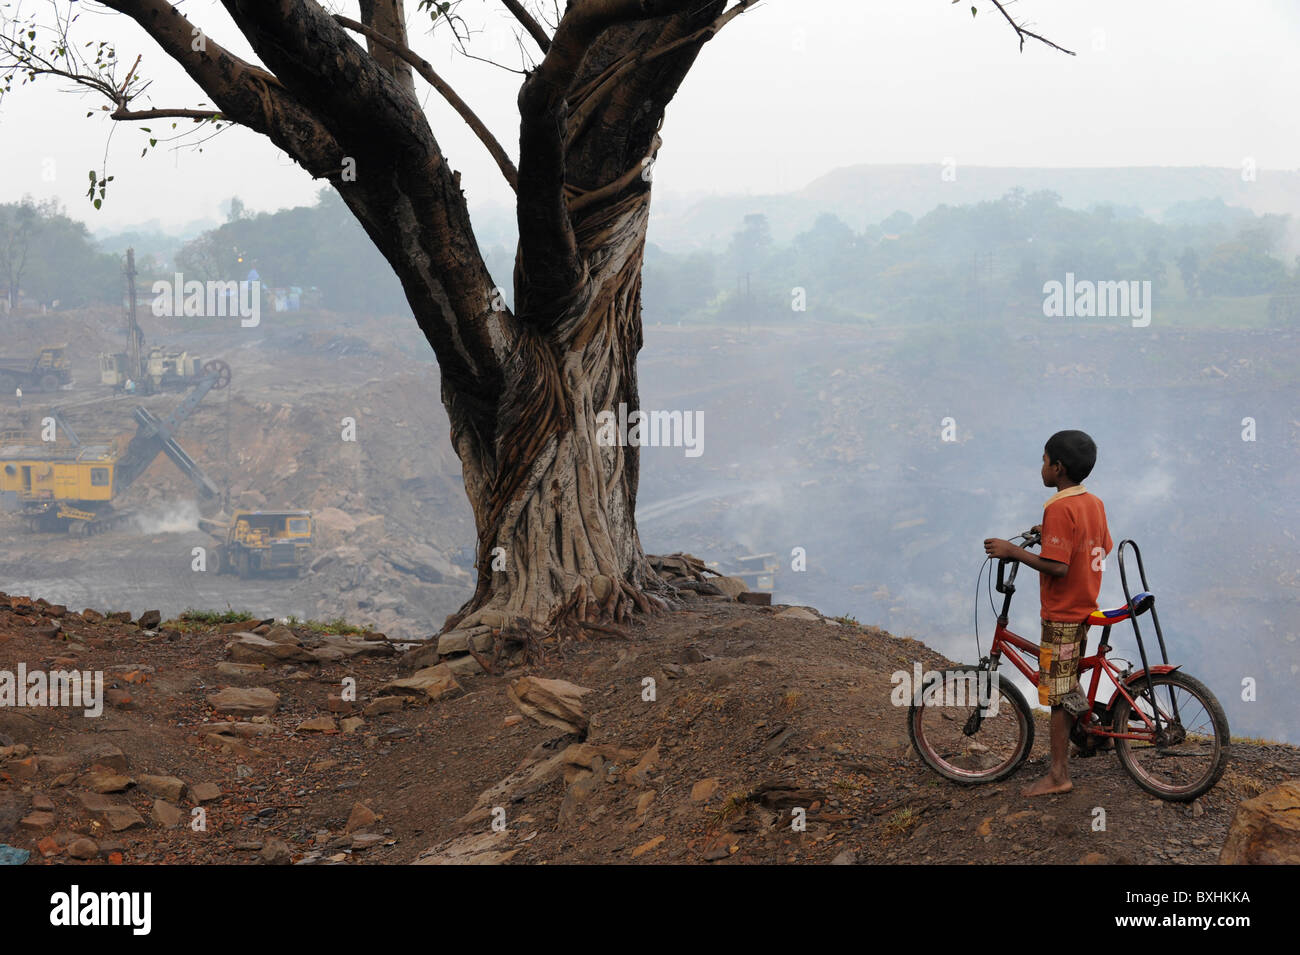 Indien Jharkhand Jharia, brennen Tagebau Kohle Minen von BCCL Bharat Kokskohle Ltd., Baum und Junge mit dem Fahrrad Stockfoto